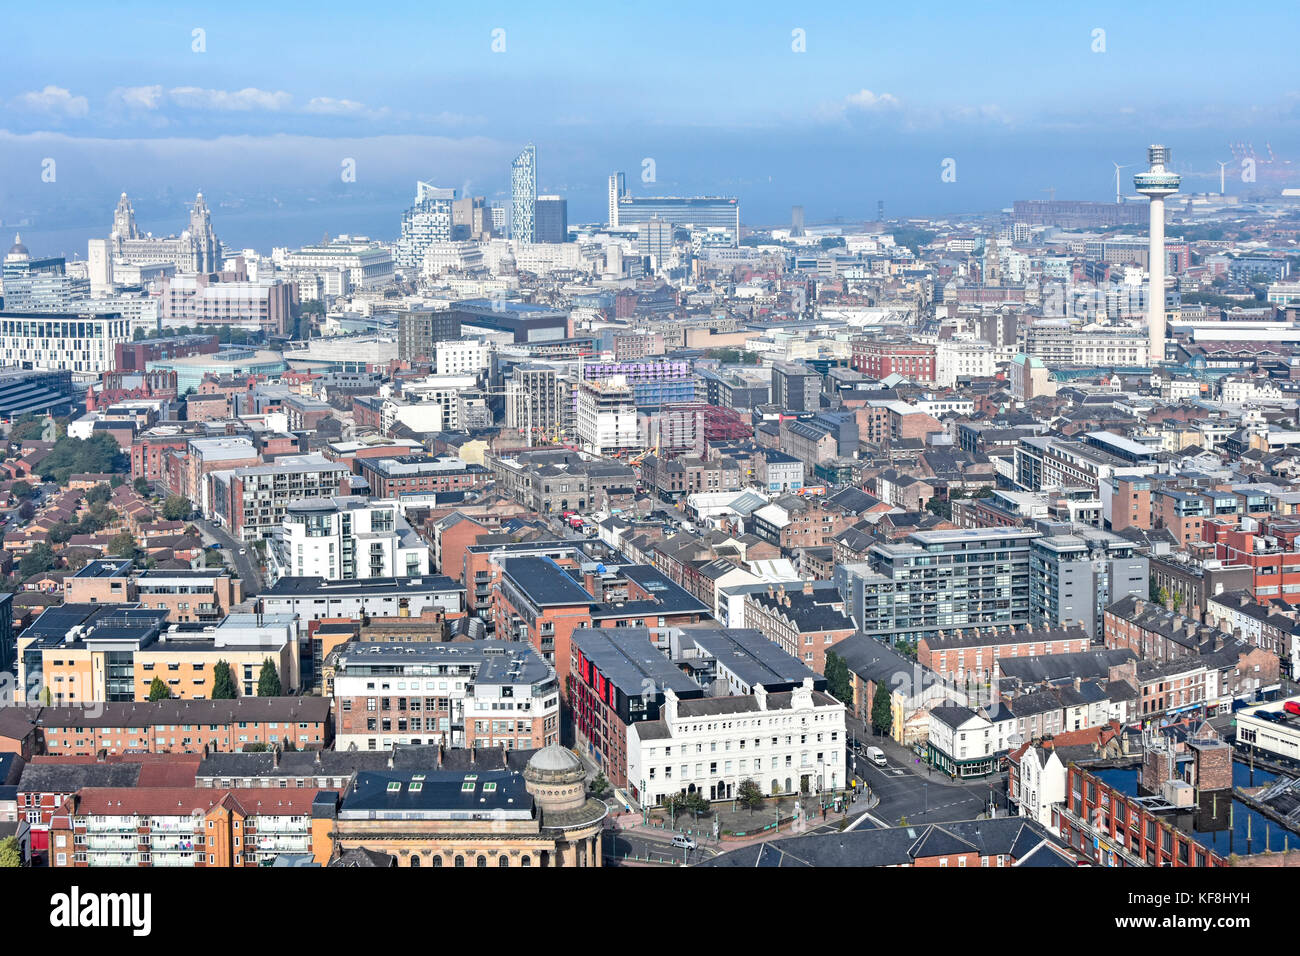 Guardando verso il basso a partire da sopra come la nebbia scompare dal fiume Mersey & Liverpool waterfront edifici e altri centro città attrazioni fra cui il Radio City Tower Regno Unito Foto Stock